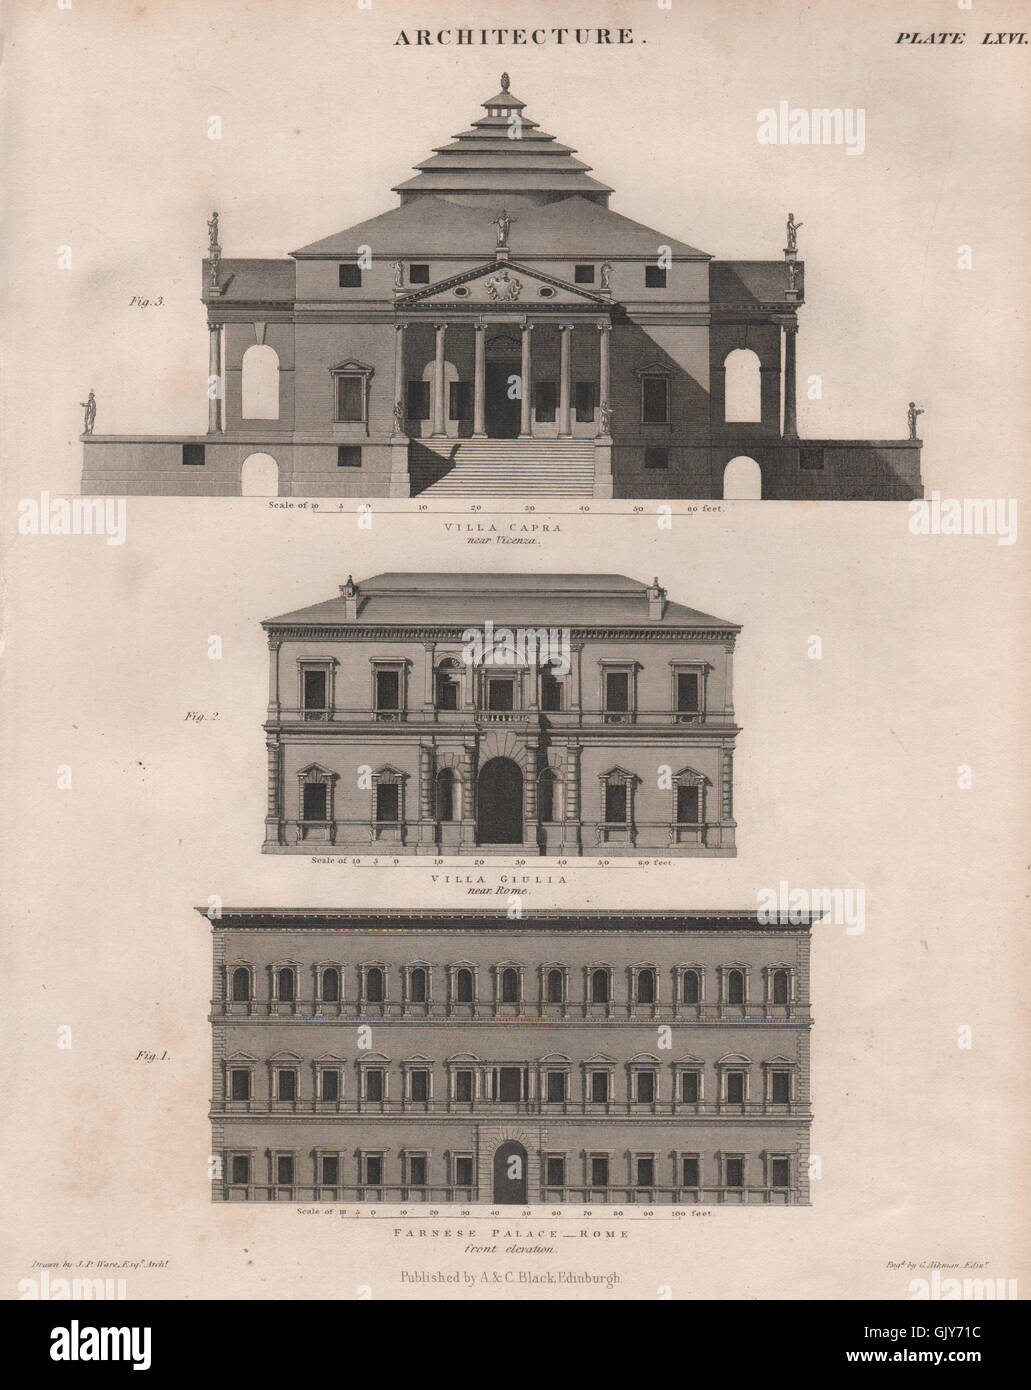 Architecture. Farnese Palace, Rome. Villa Giulia. Villa Capra, Vicenza, 1860 Stock Photo